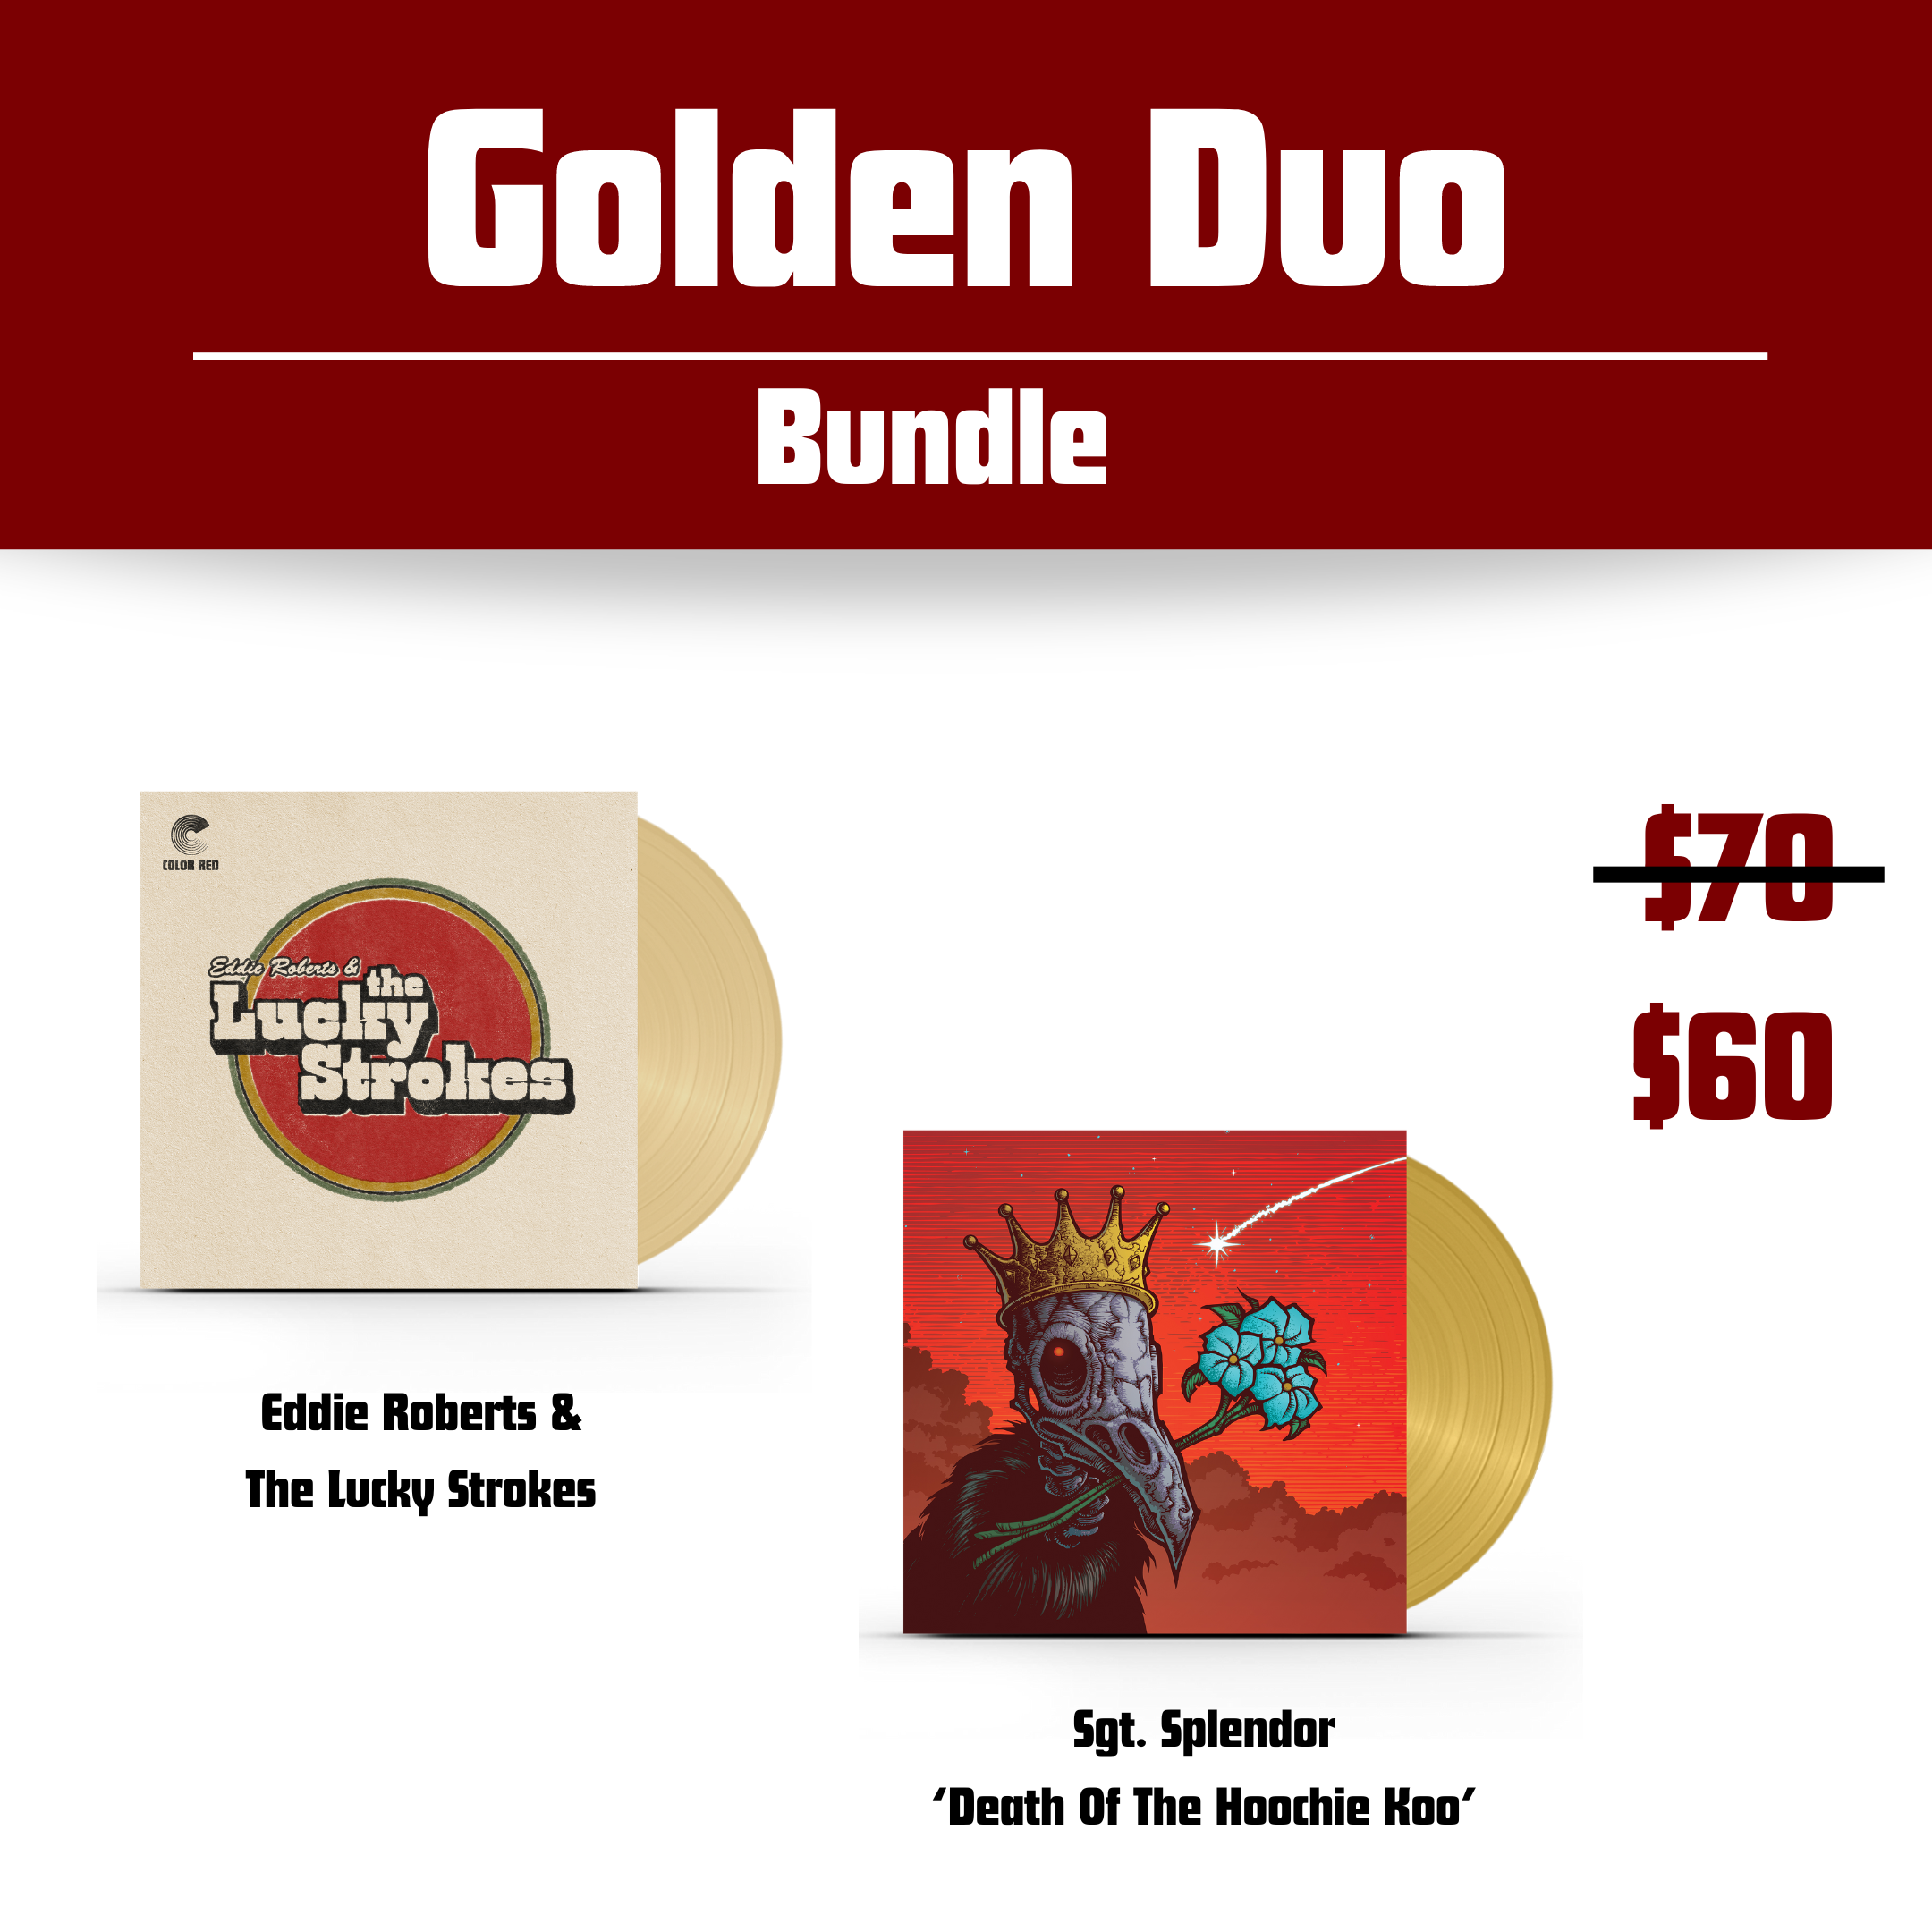 Golden Duo - Vinyl Bundle